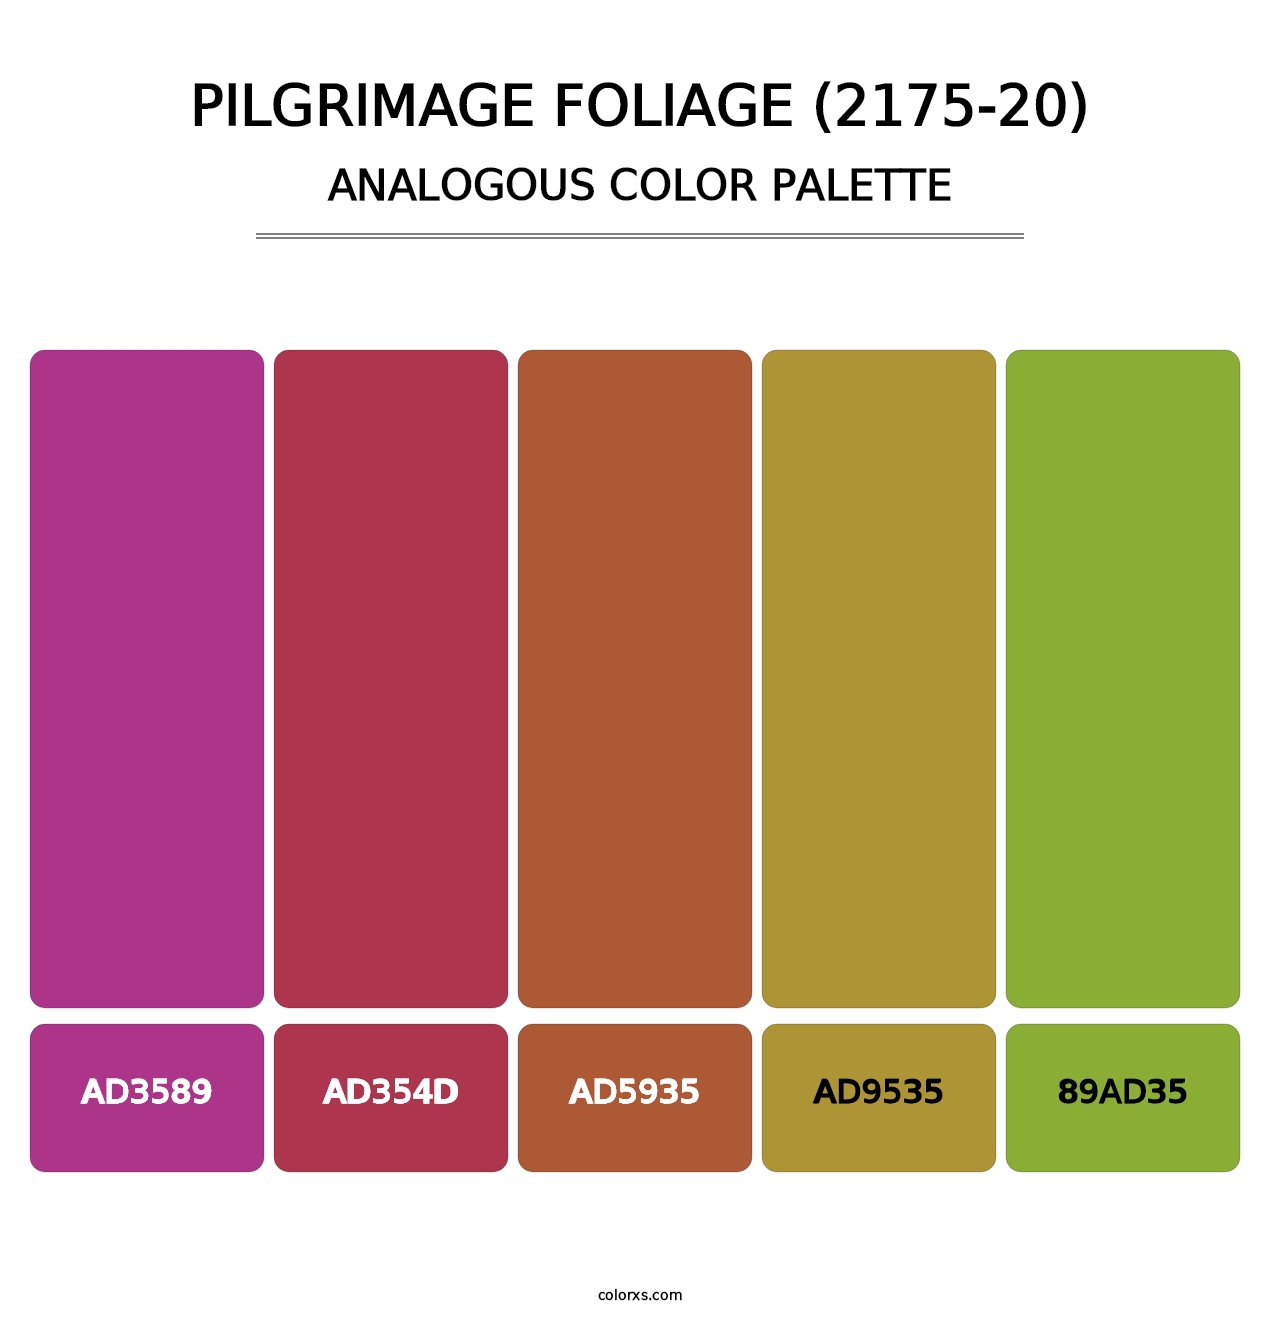 Pilgrimage Foliage (2175-20) - Analogous Color Palette